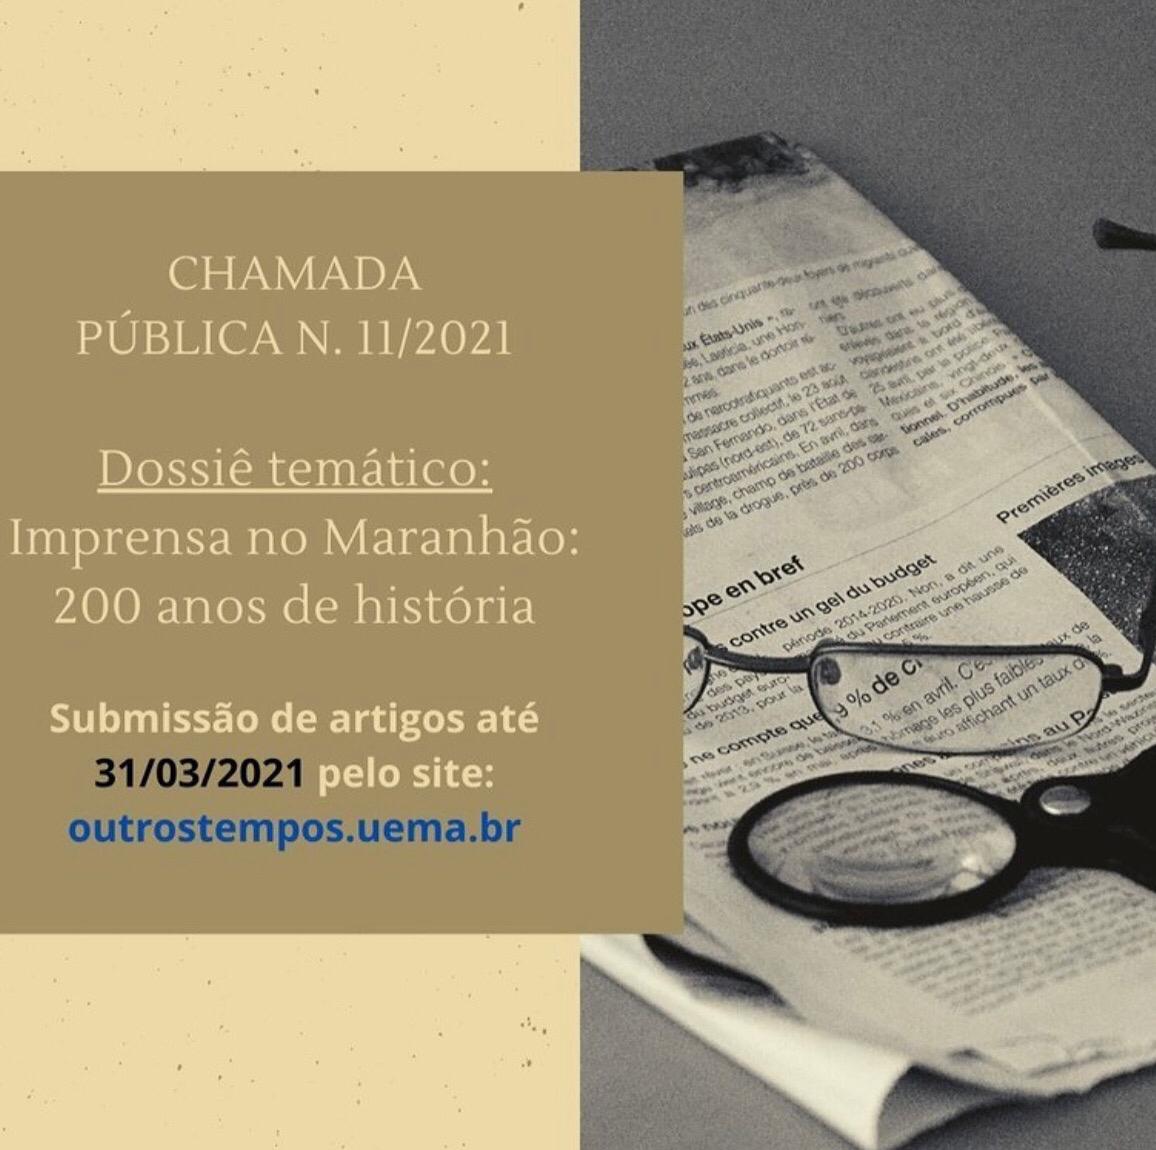 Revista Outros Tempos prepara Dossiê sobre a história do Maranhão